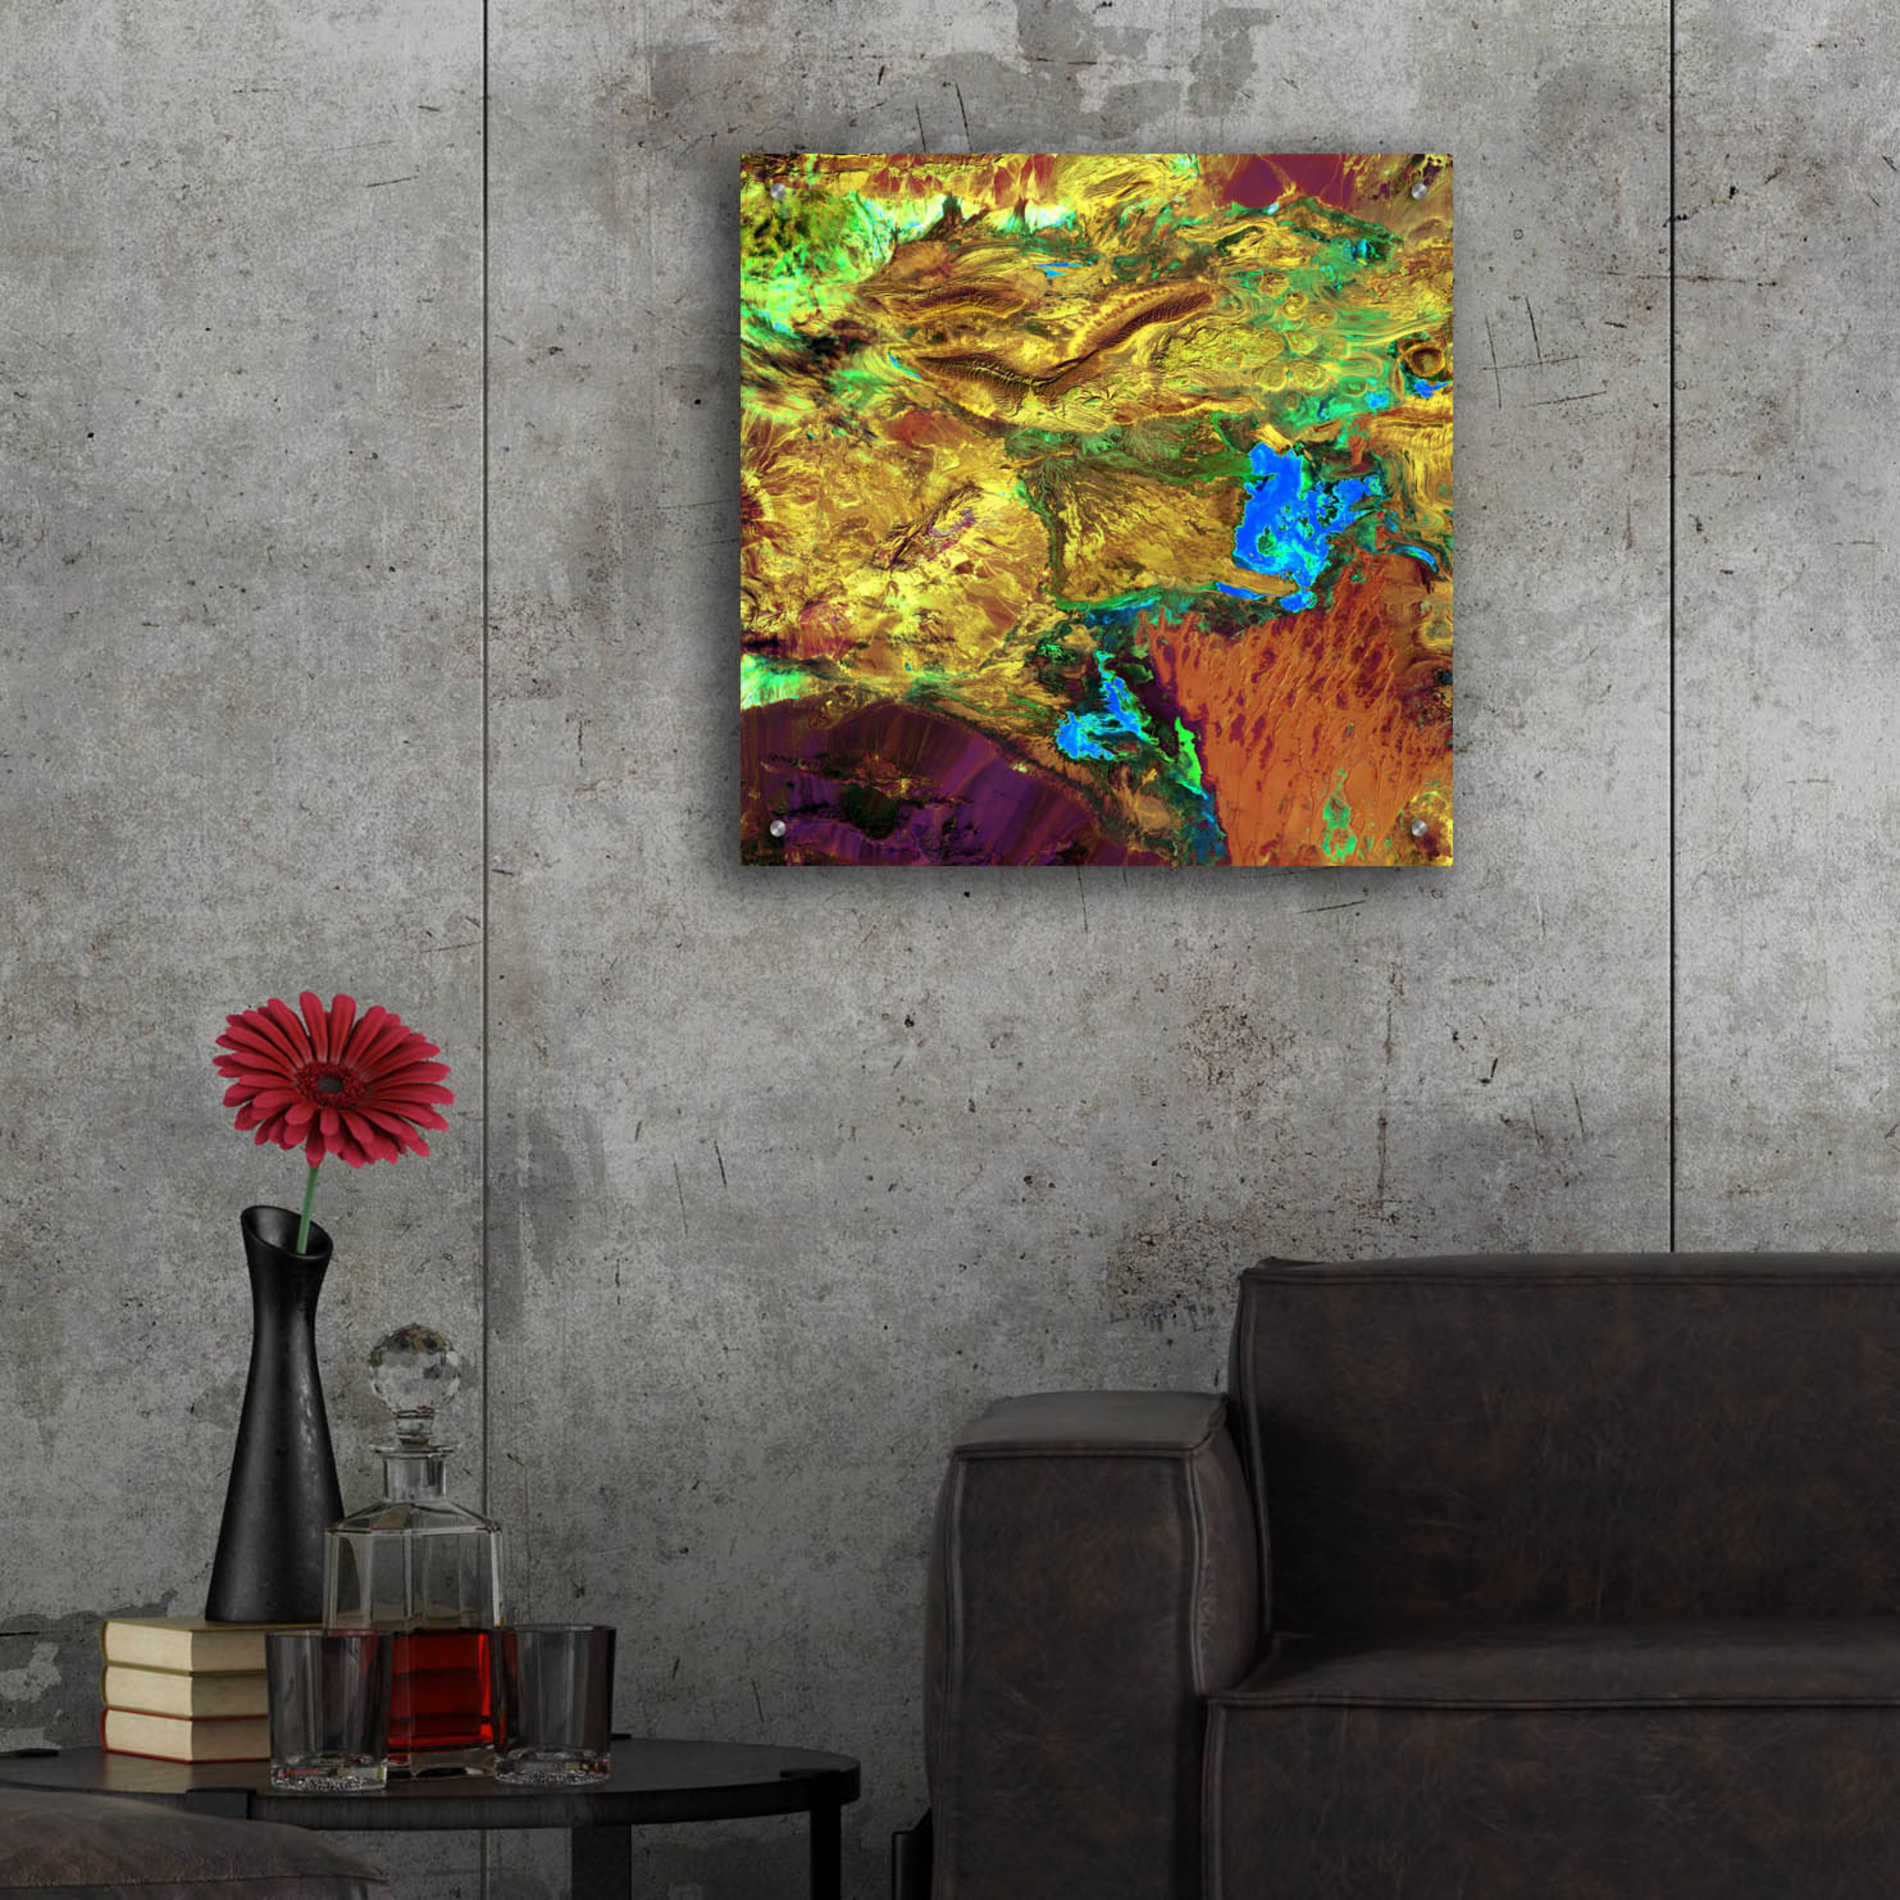 Epic Art 'Earth as Art: Spilled Paint,' Acrylic Glass Wall Art,24x24